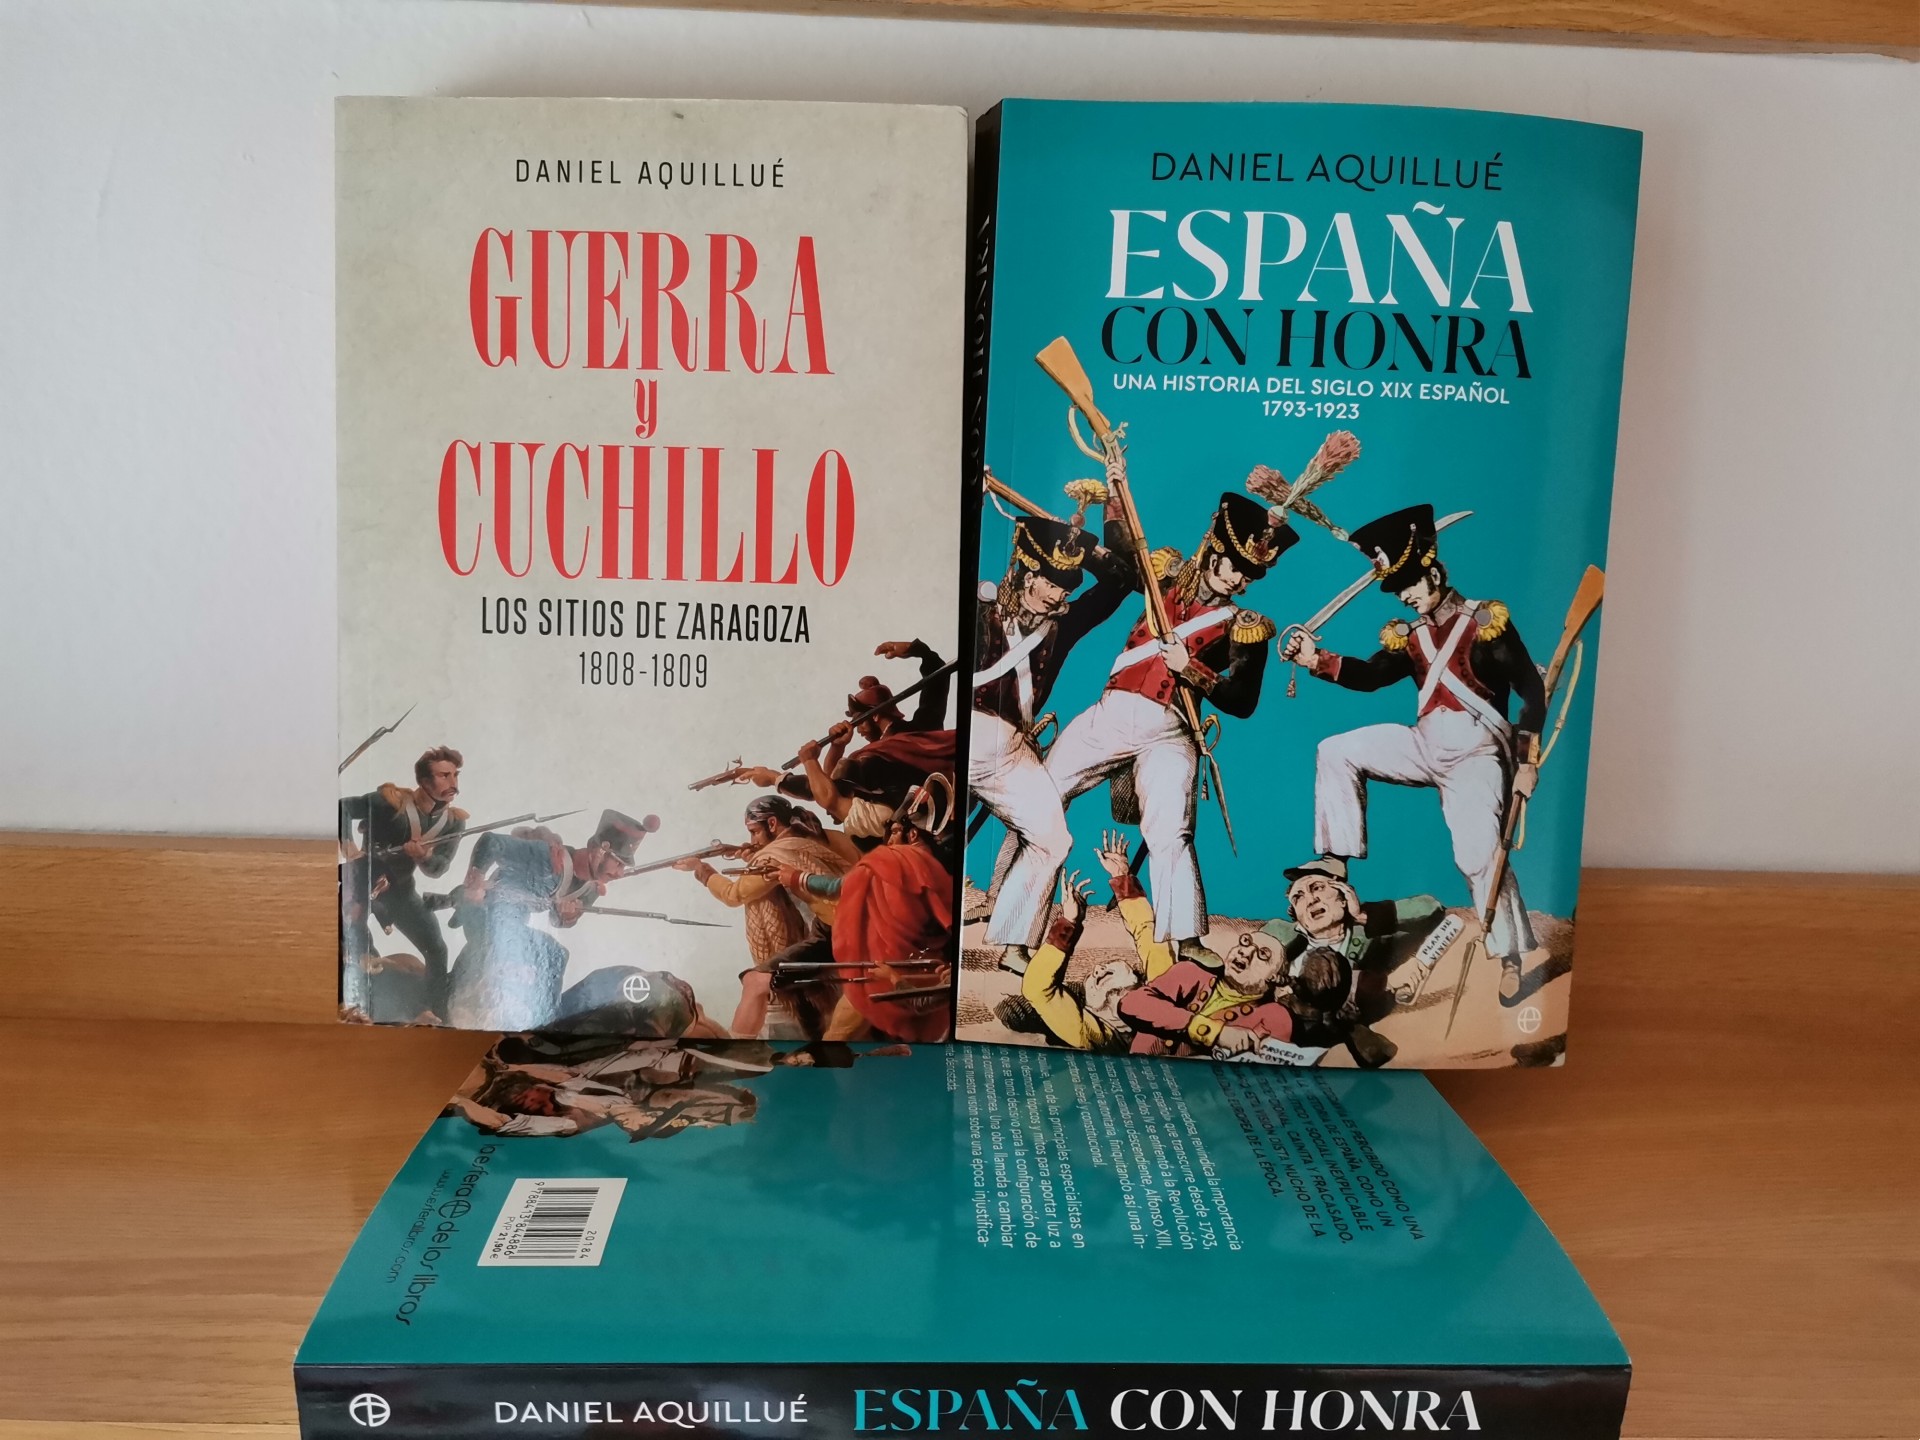 Las dos obras de divulgación de Daniel Aquillué, 'Guerra y cuchillo' y la reciente 'España con honra'. FOTO: Daniel Aquillué